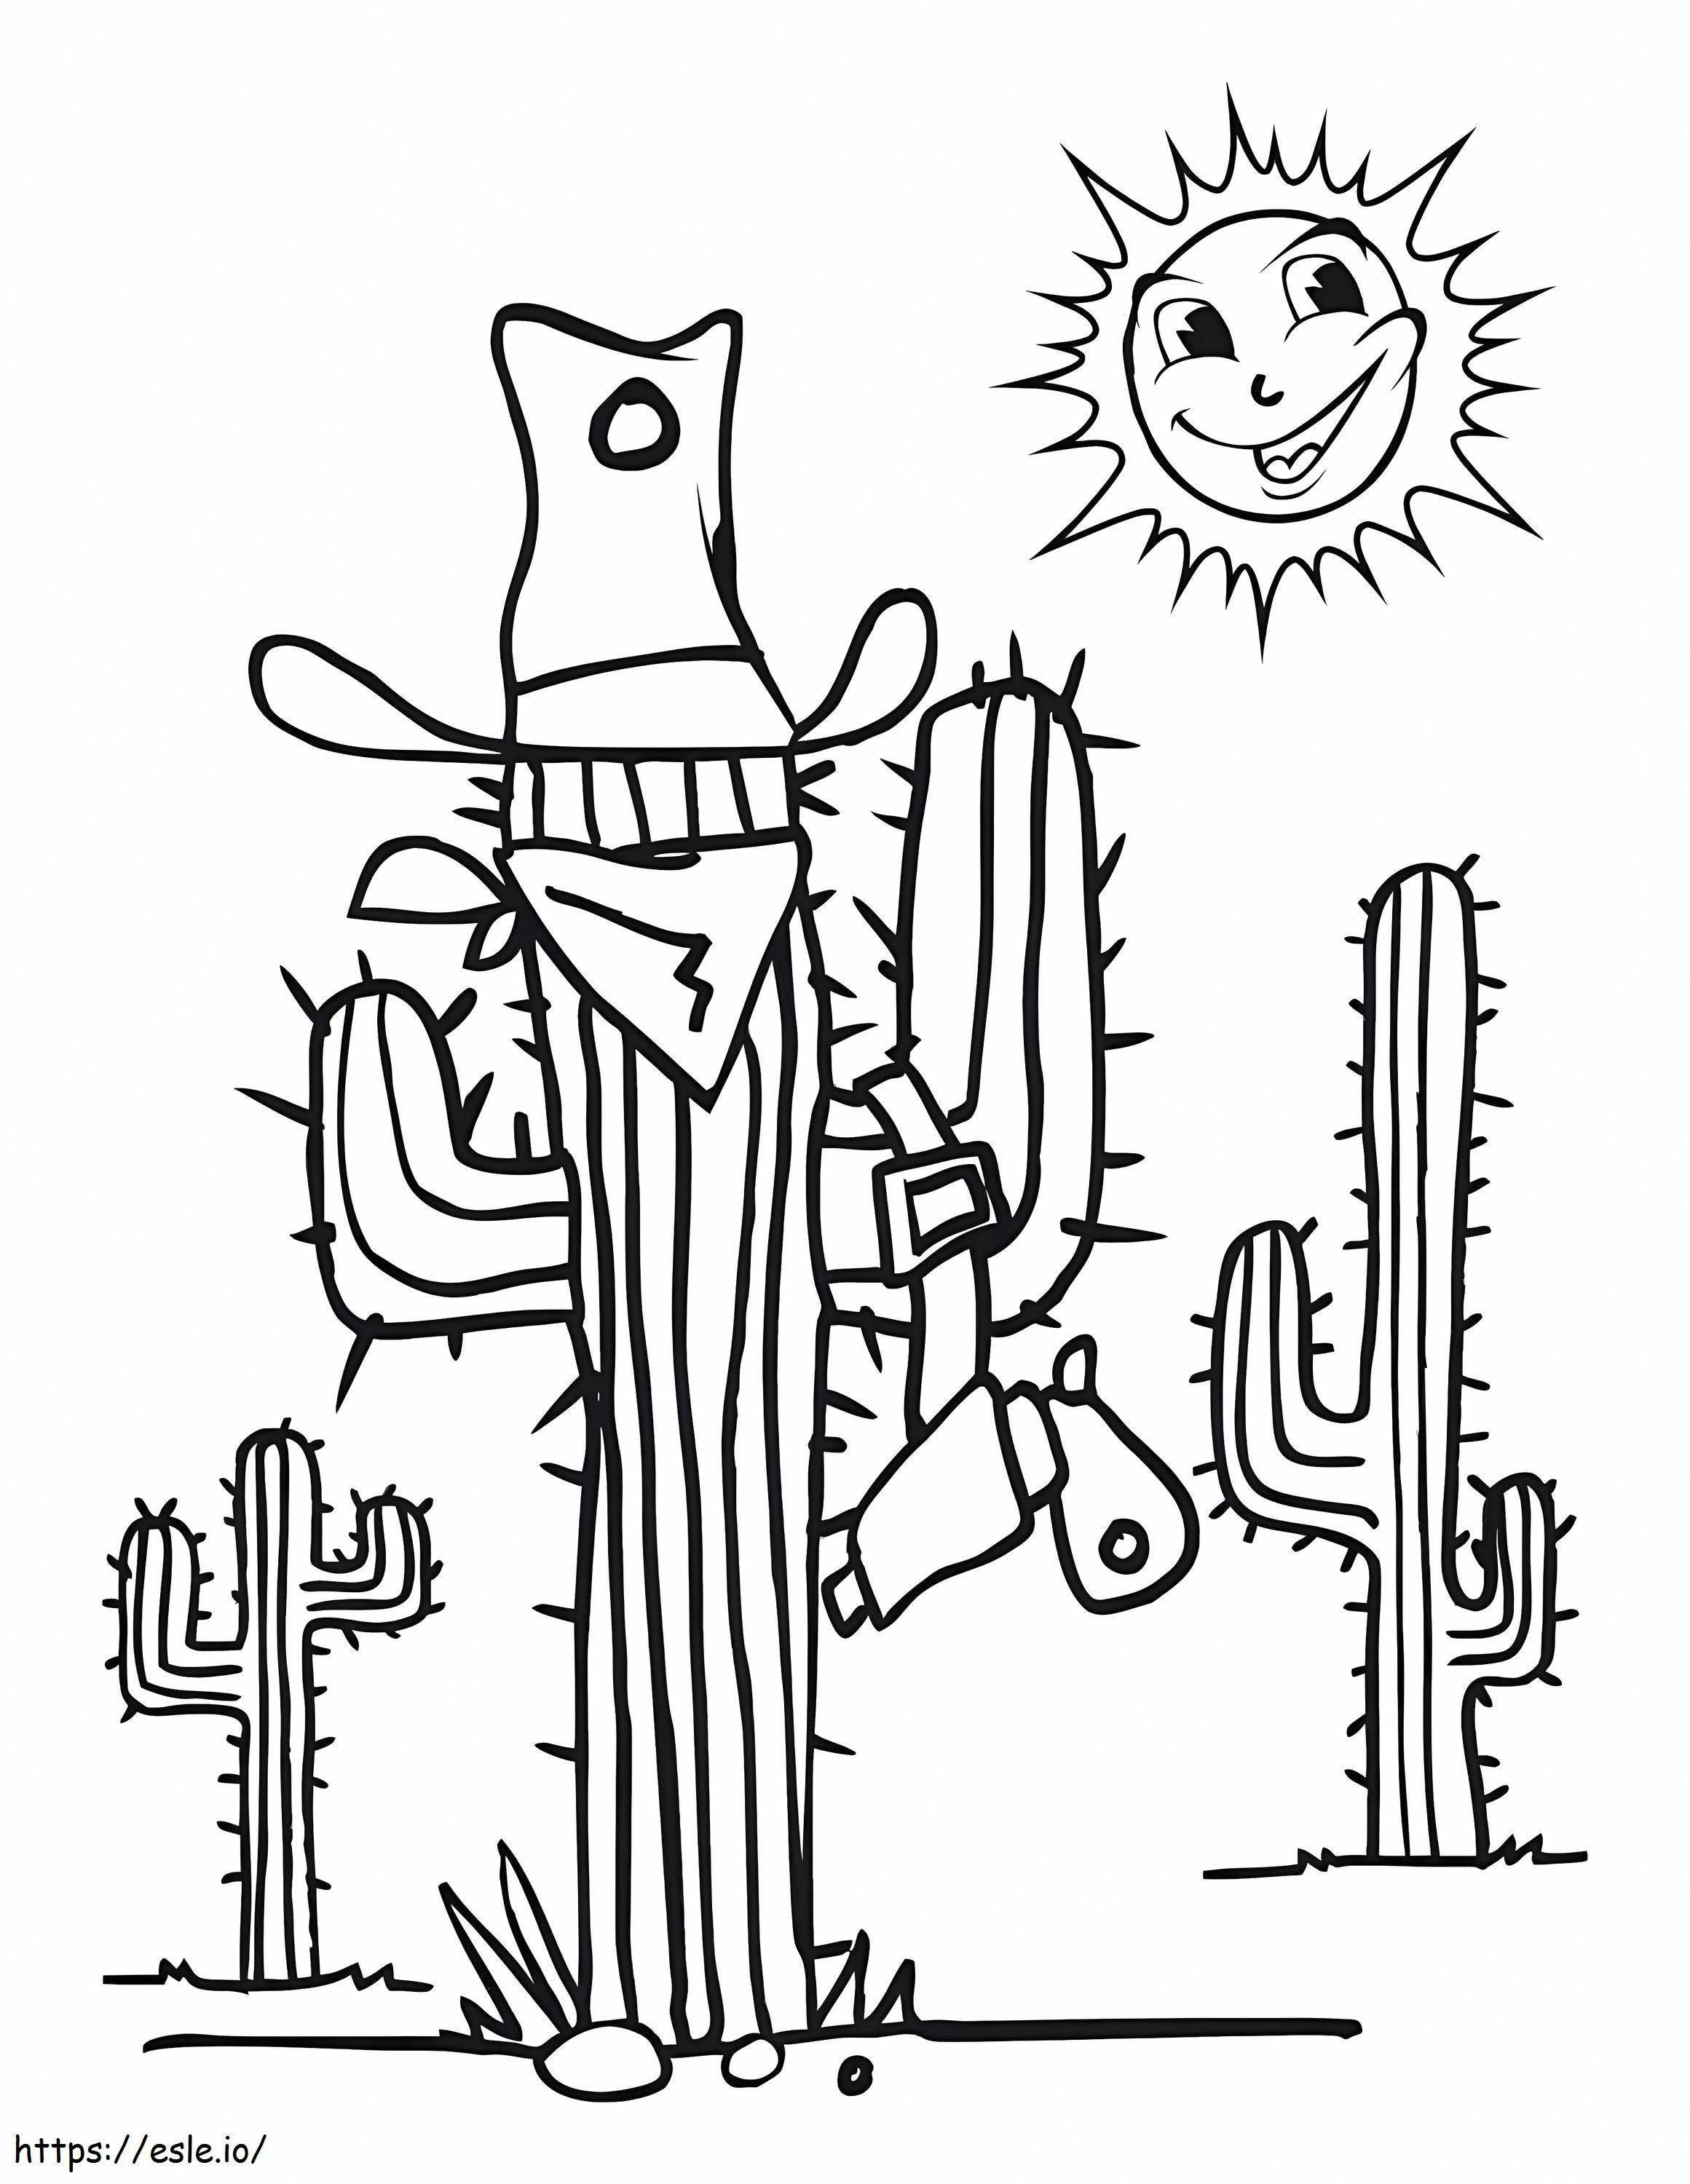 Cartoon Cactus coloring page